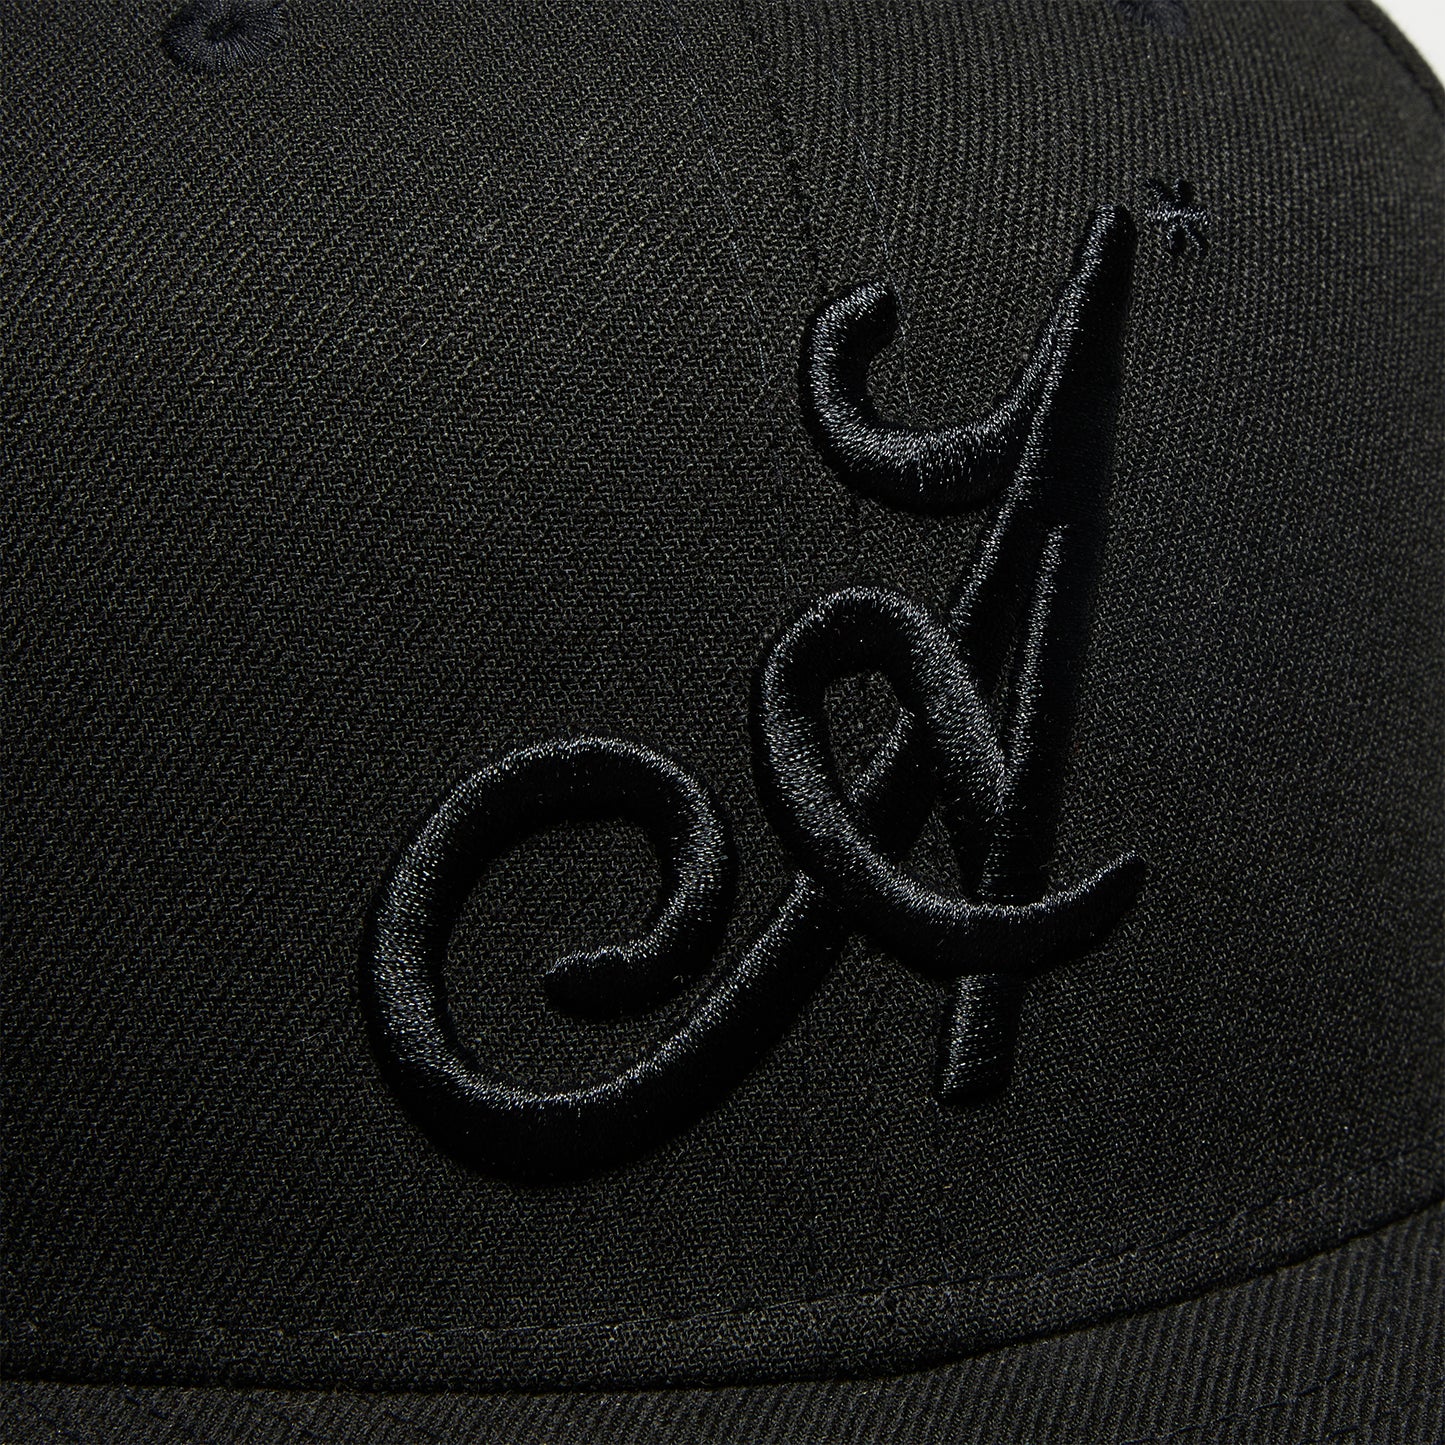 New Era 59 Fifty x Adidem Asterisks Fitted Hat (Black)